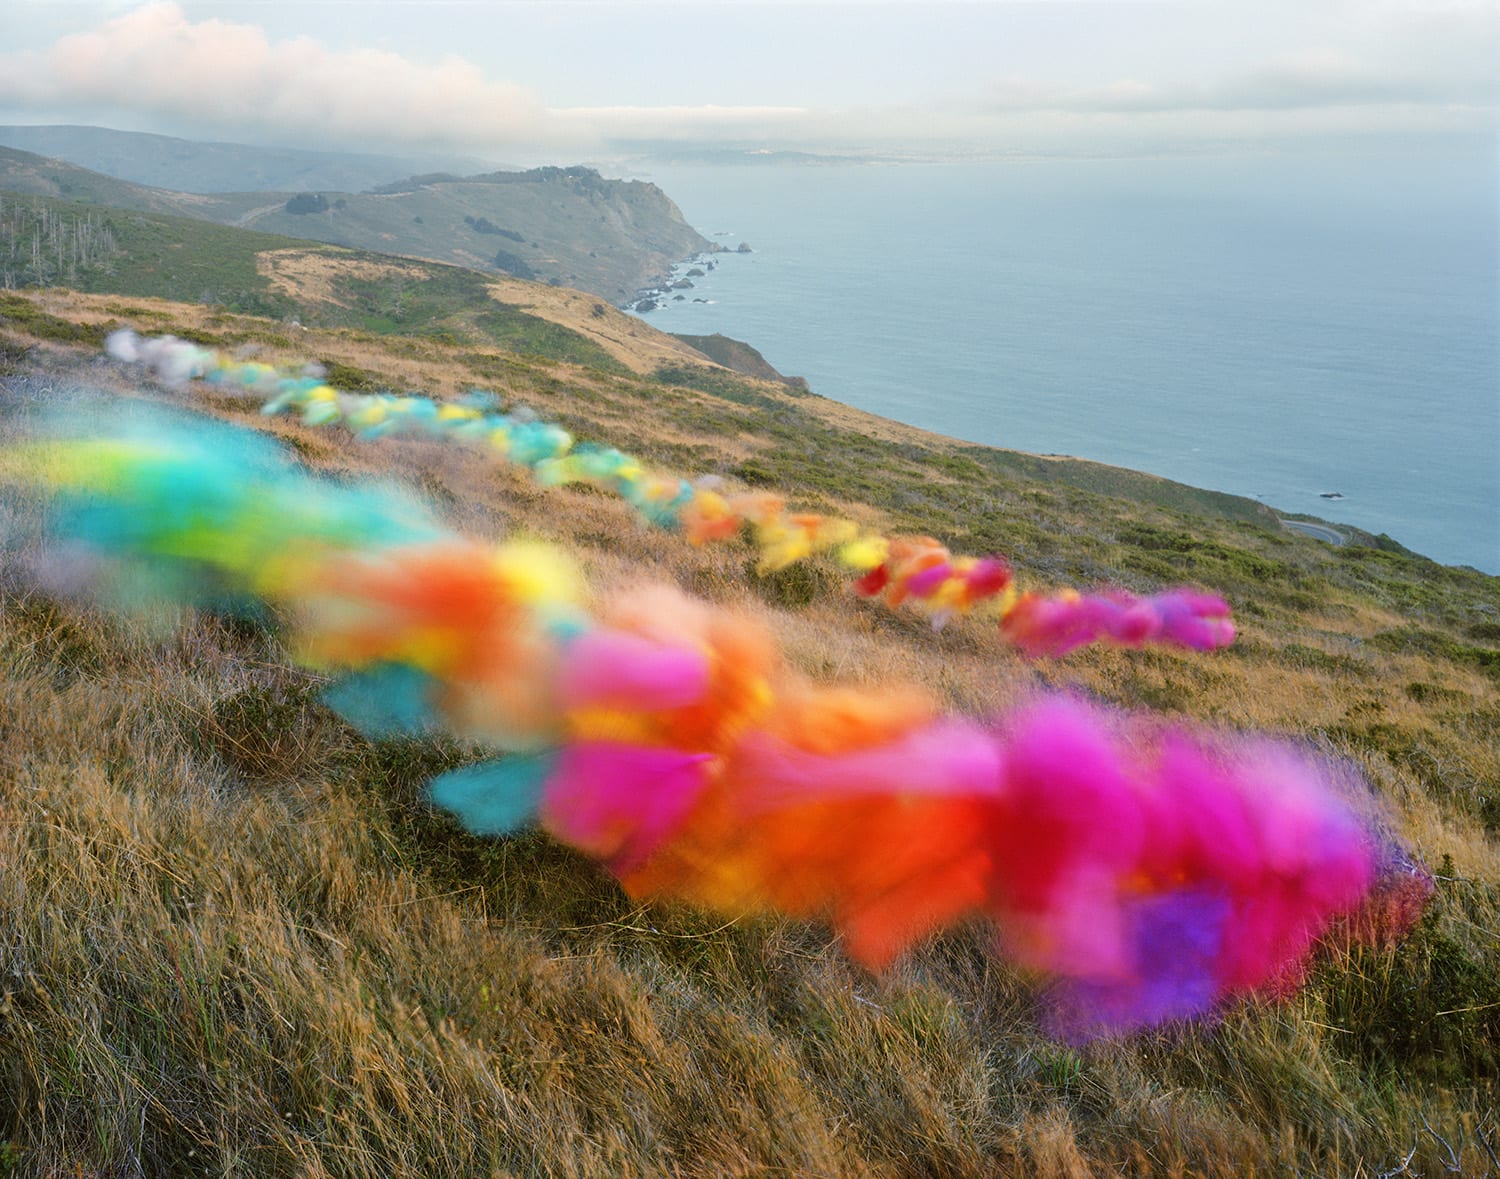 صور تركت الأشخاص مرتبكين.. ألق نظرة على "الغيوم الملونة" التي اجتاحت سواحل كاليفورنيا